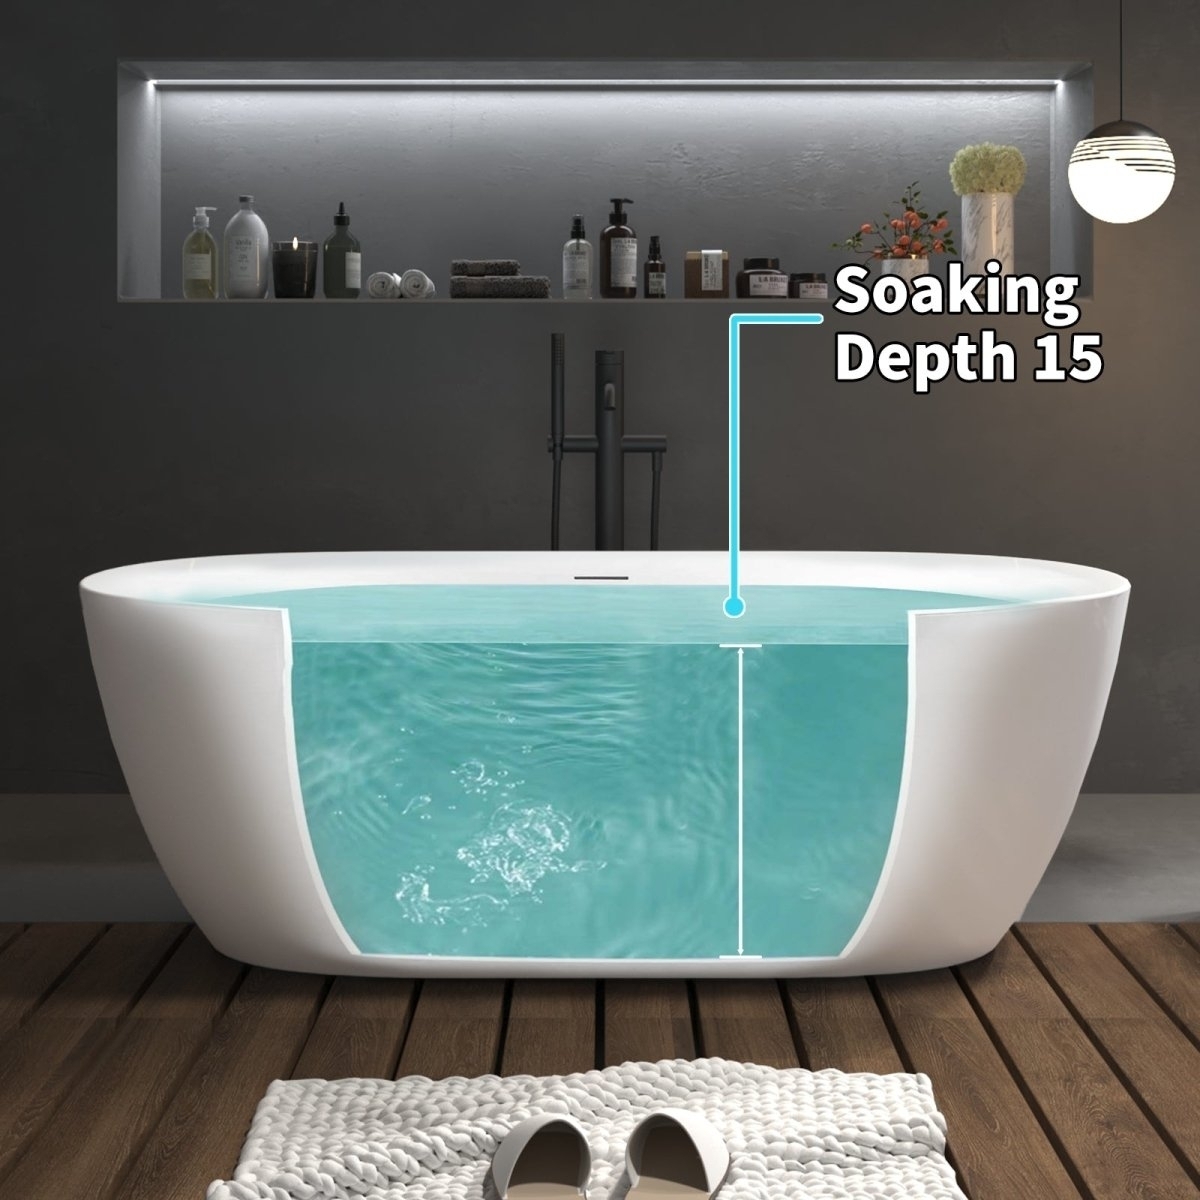 ExBrite 67 Bathtub Acrylic Free Standing Tub Classic Oval Shape Soaking Tub Gloss White